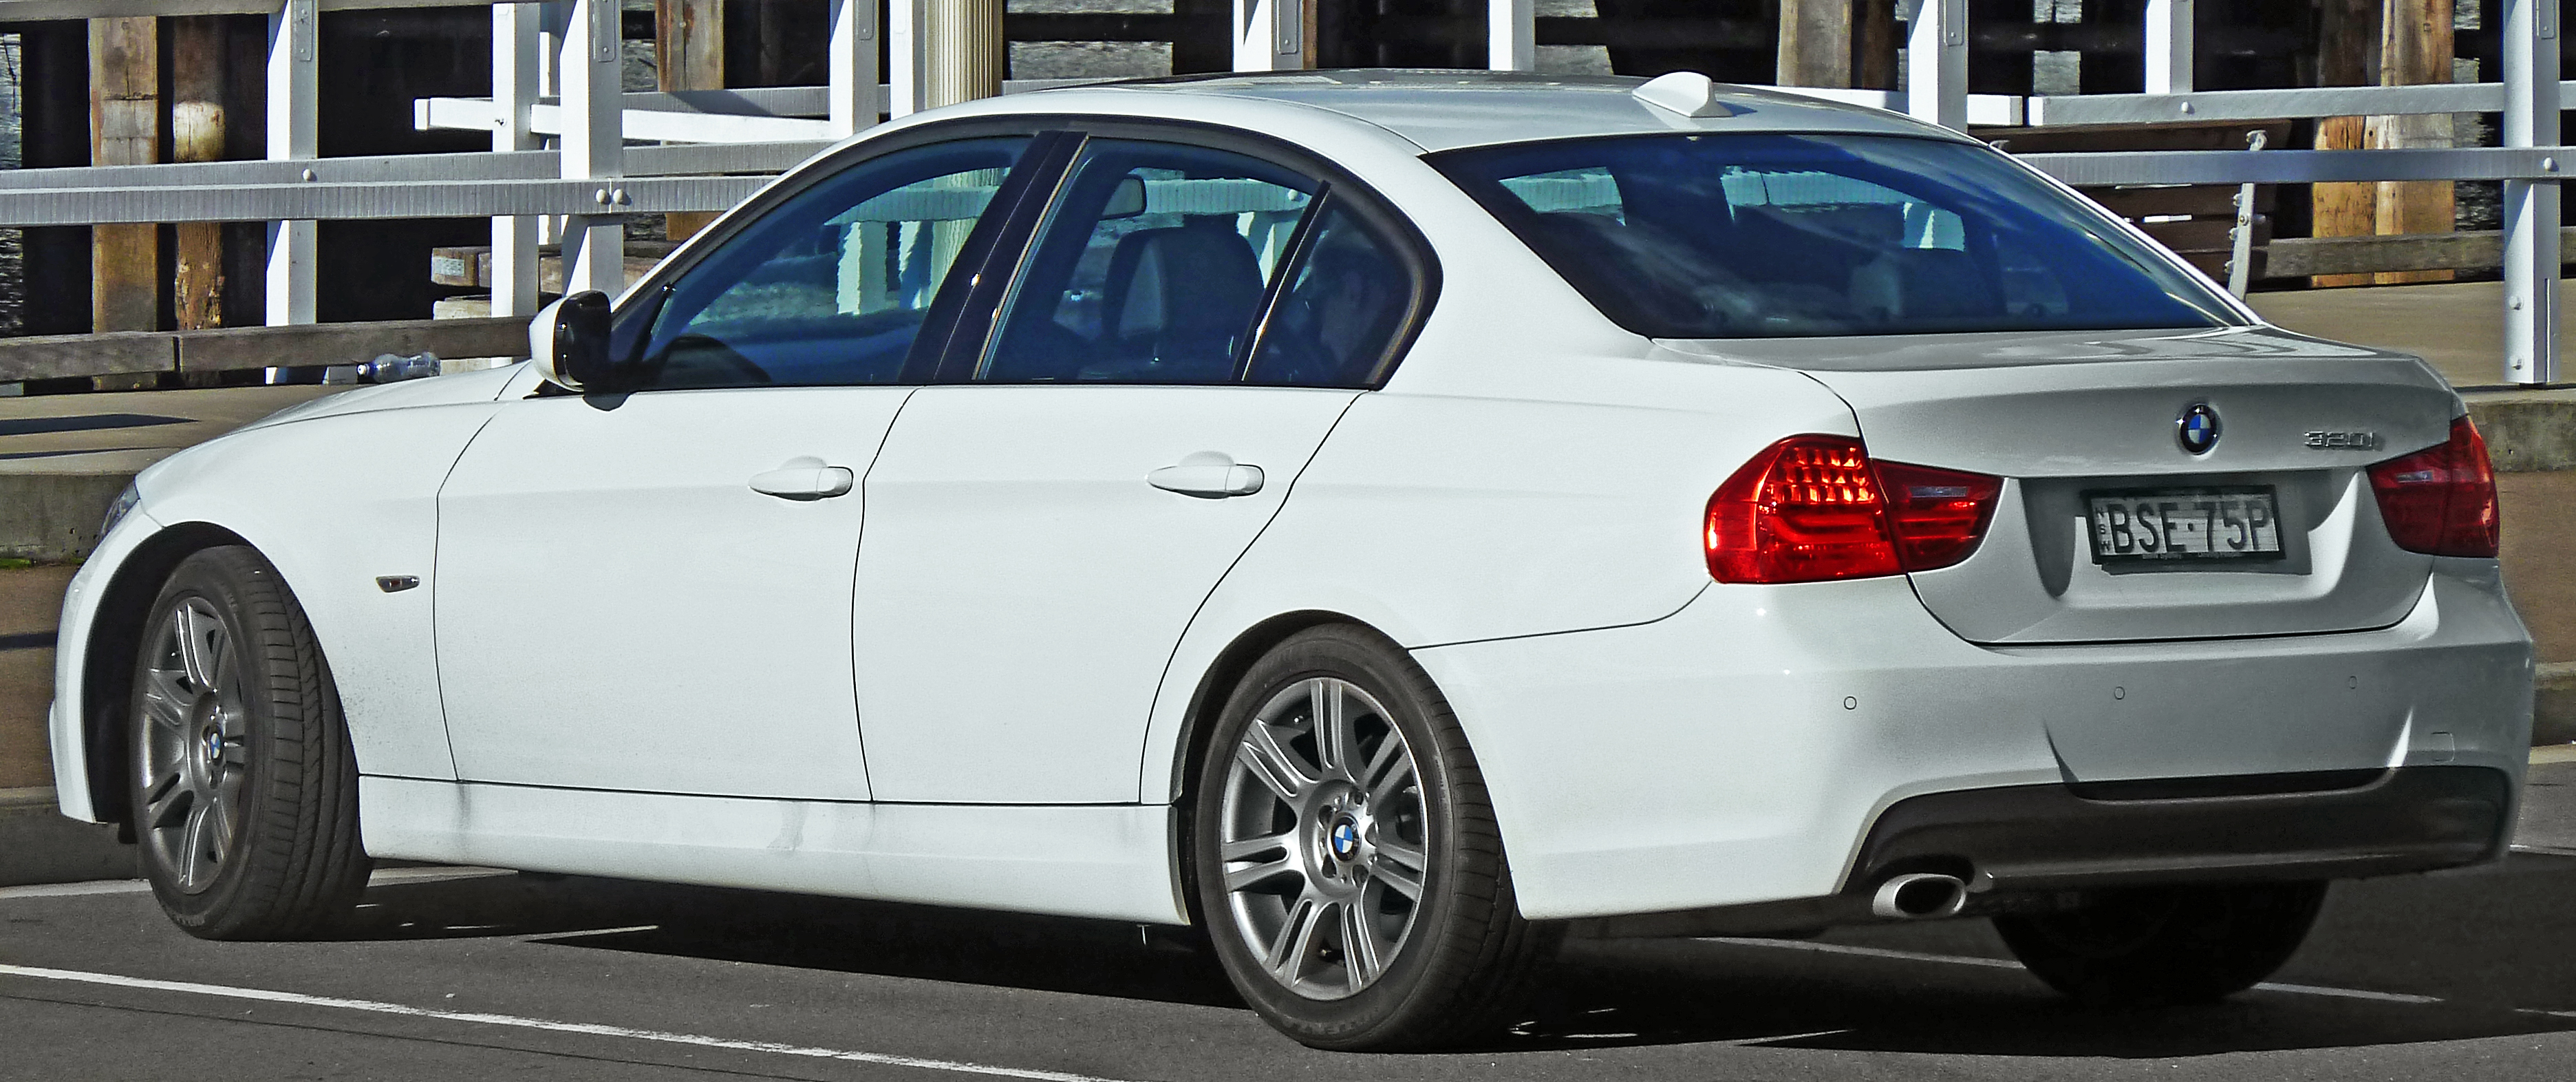 2008-2011 BMW 320i (E90) sedan (2011-03-23)